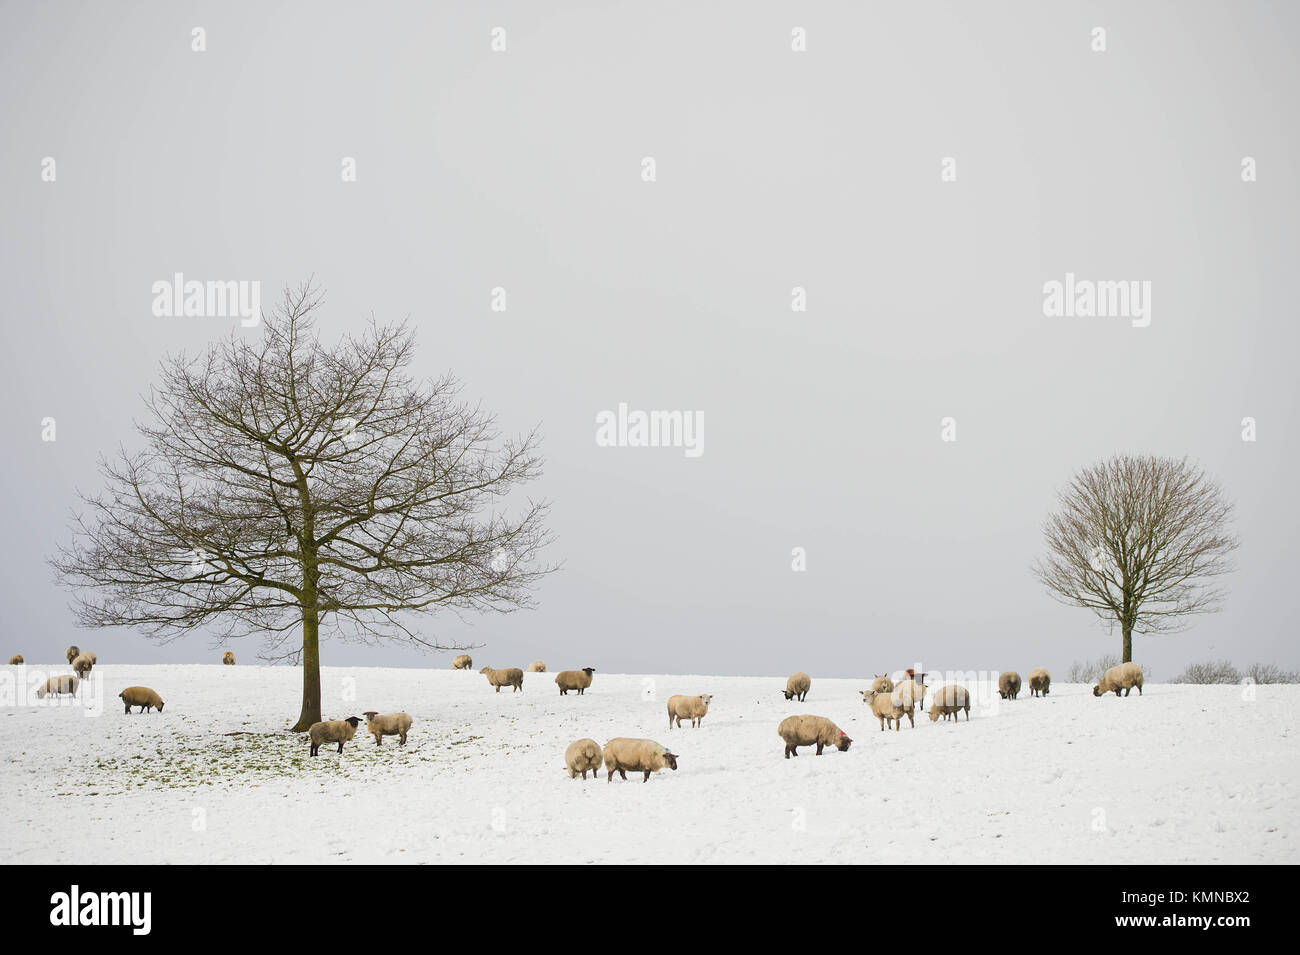 Schafe in einem schneebedeckten Feld, in dem die irischen Grenze zwischen Co Fermanagh in Nordirland und Co Donegal in der Republik Irland spreizt, nach einer Decke des Schnees, verursacht durch eine arktische Luftstrom im Zuge der Sturm Caroline. Die Schafe können hin und her über die unsichtbare Grenze oft jeden Tag gehen. Stockfoto